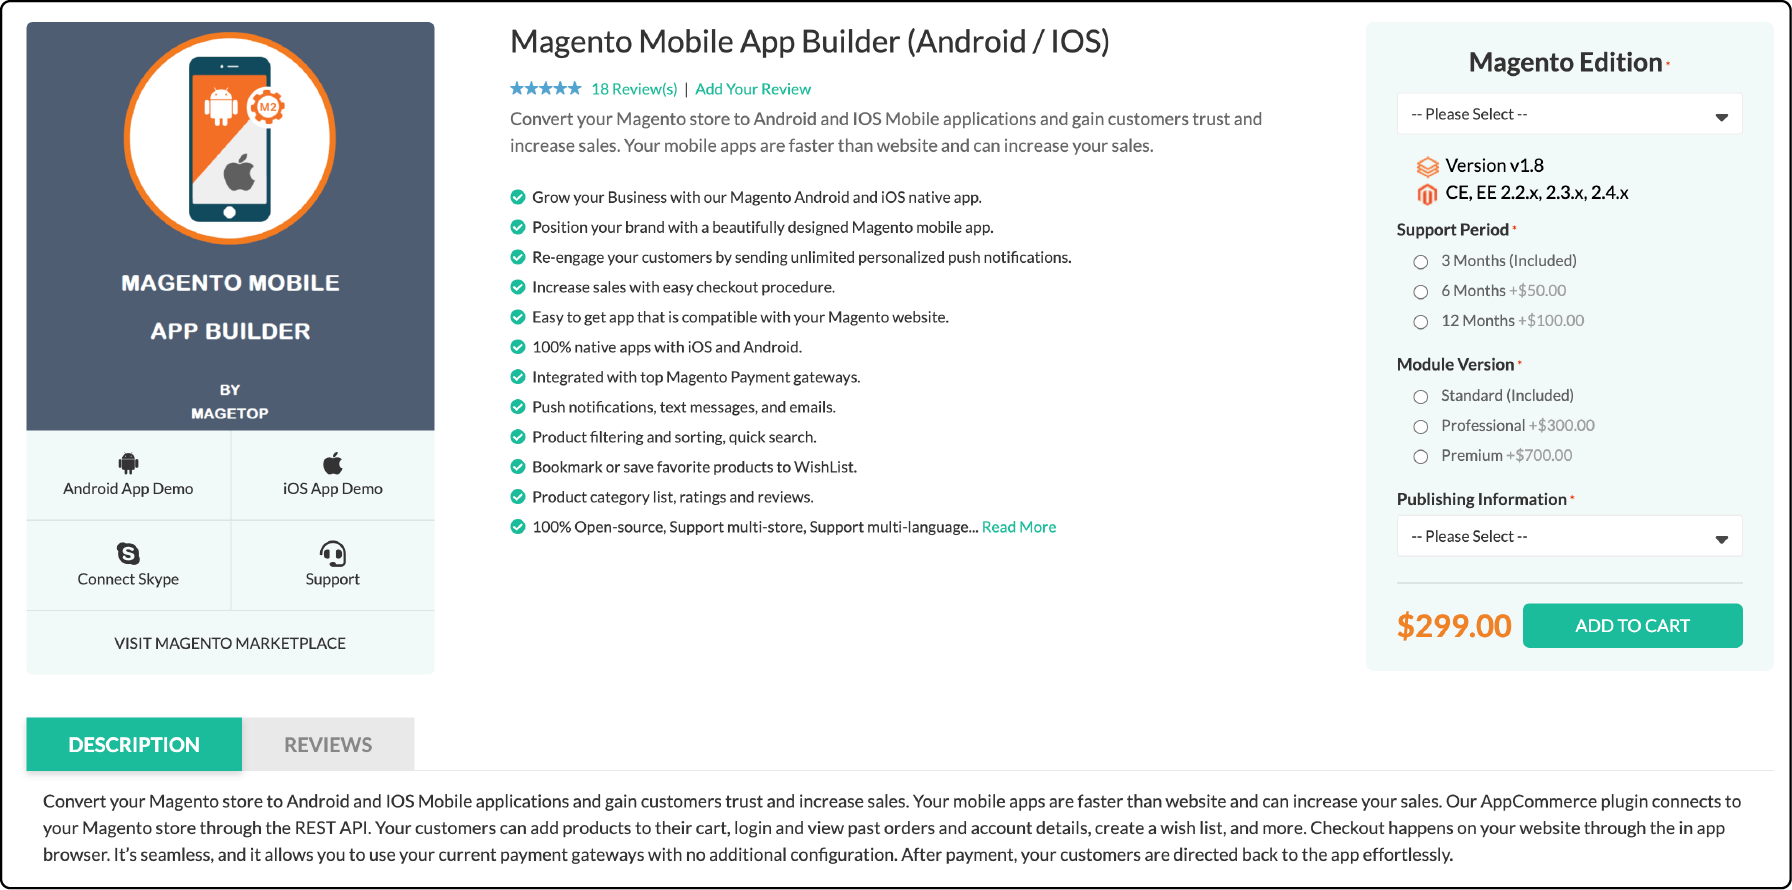 Magetop's Magento Mobile App Builder